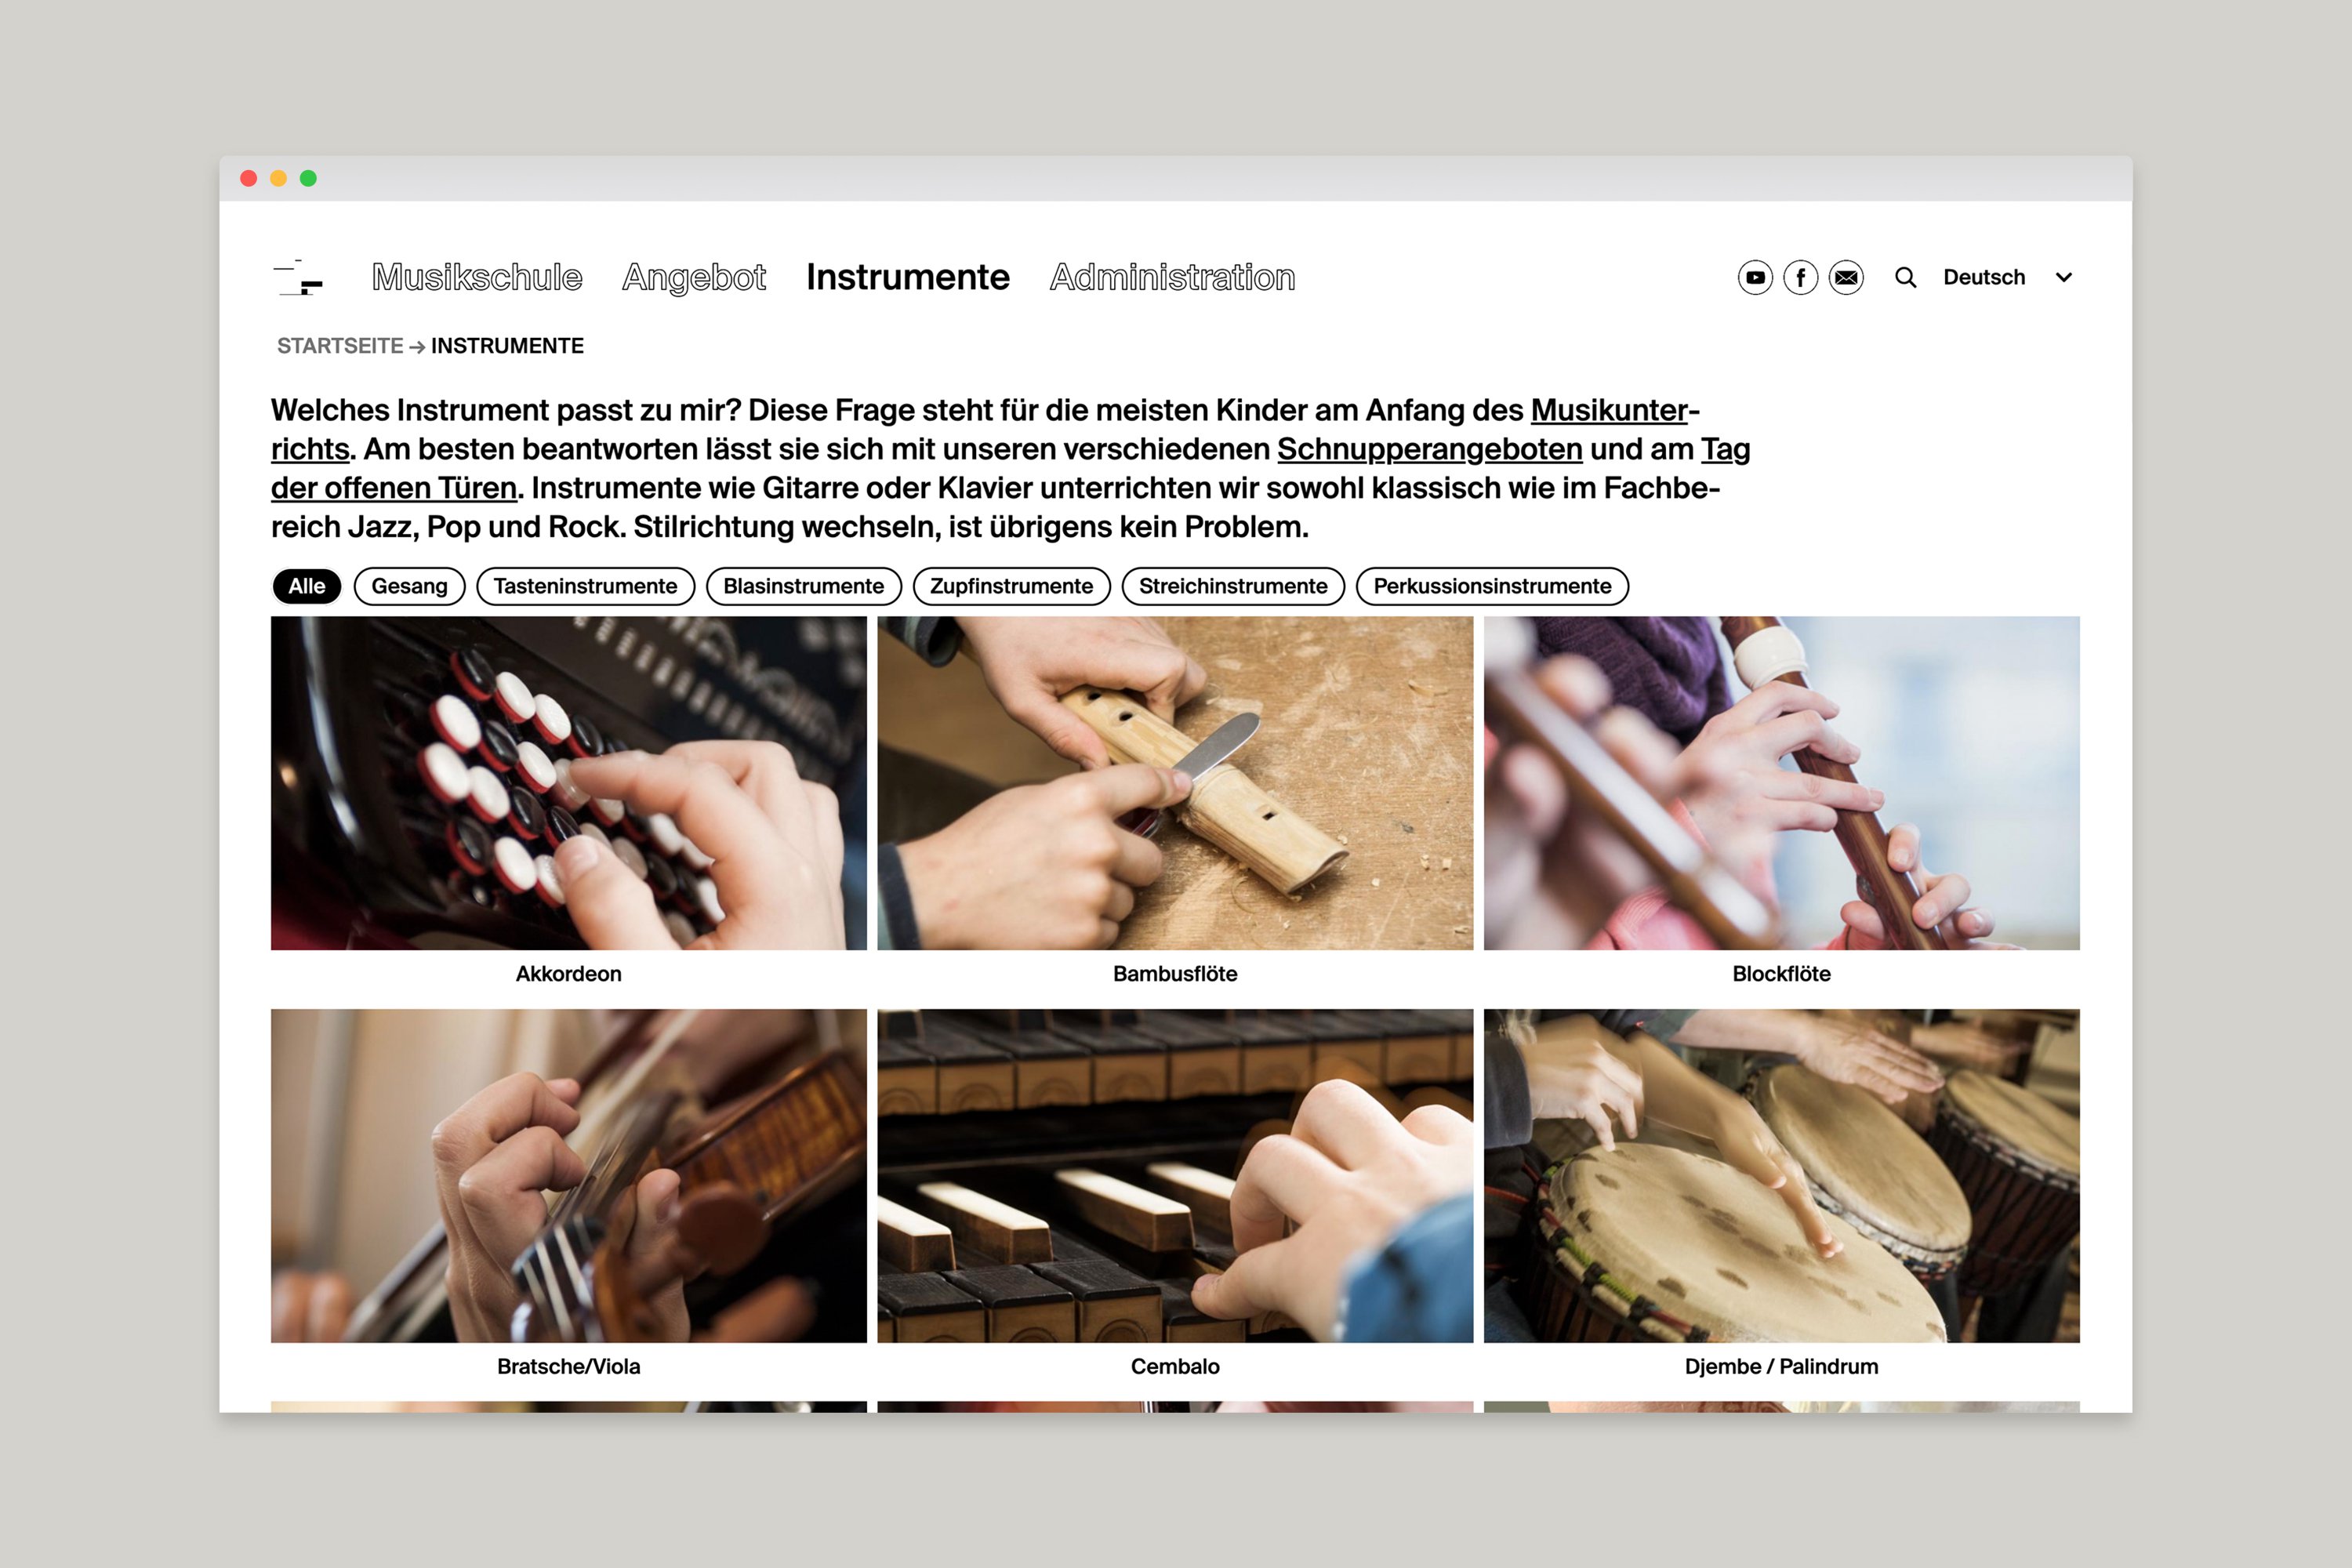 kong website musikschule biel/bienne 2020